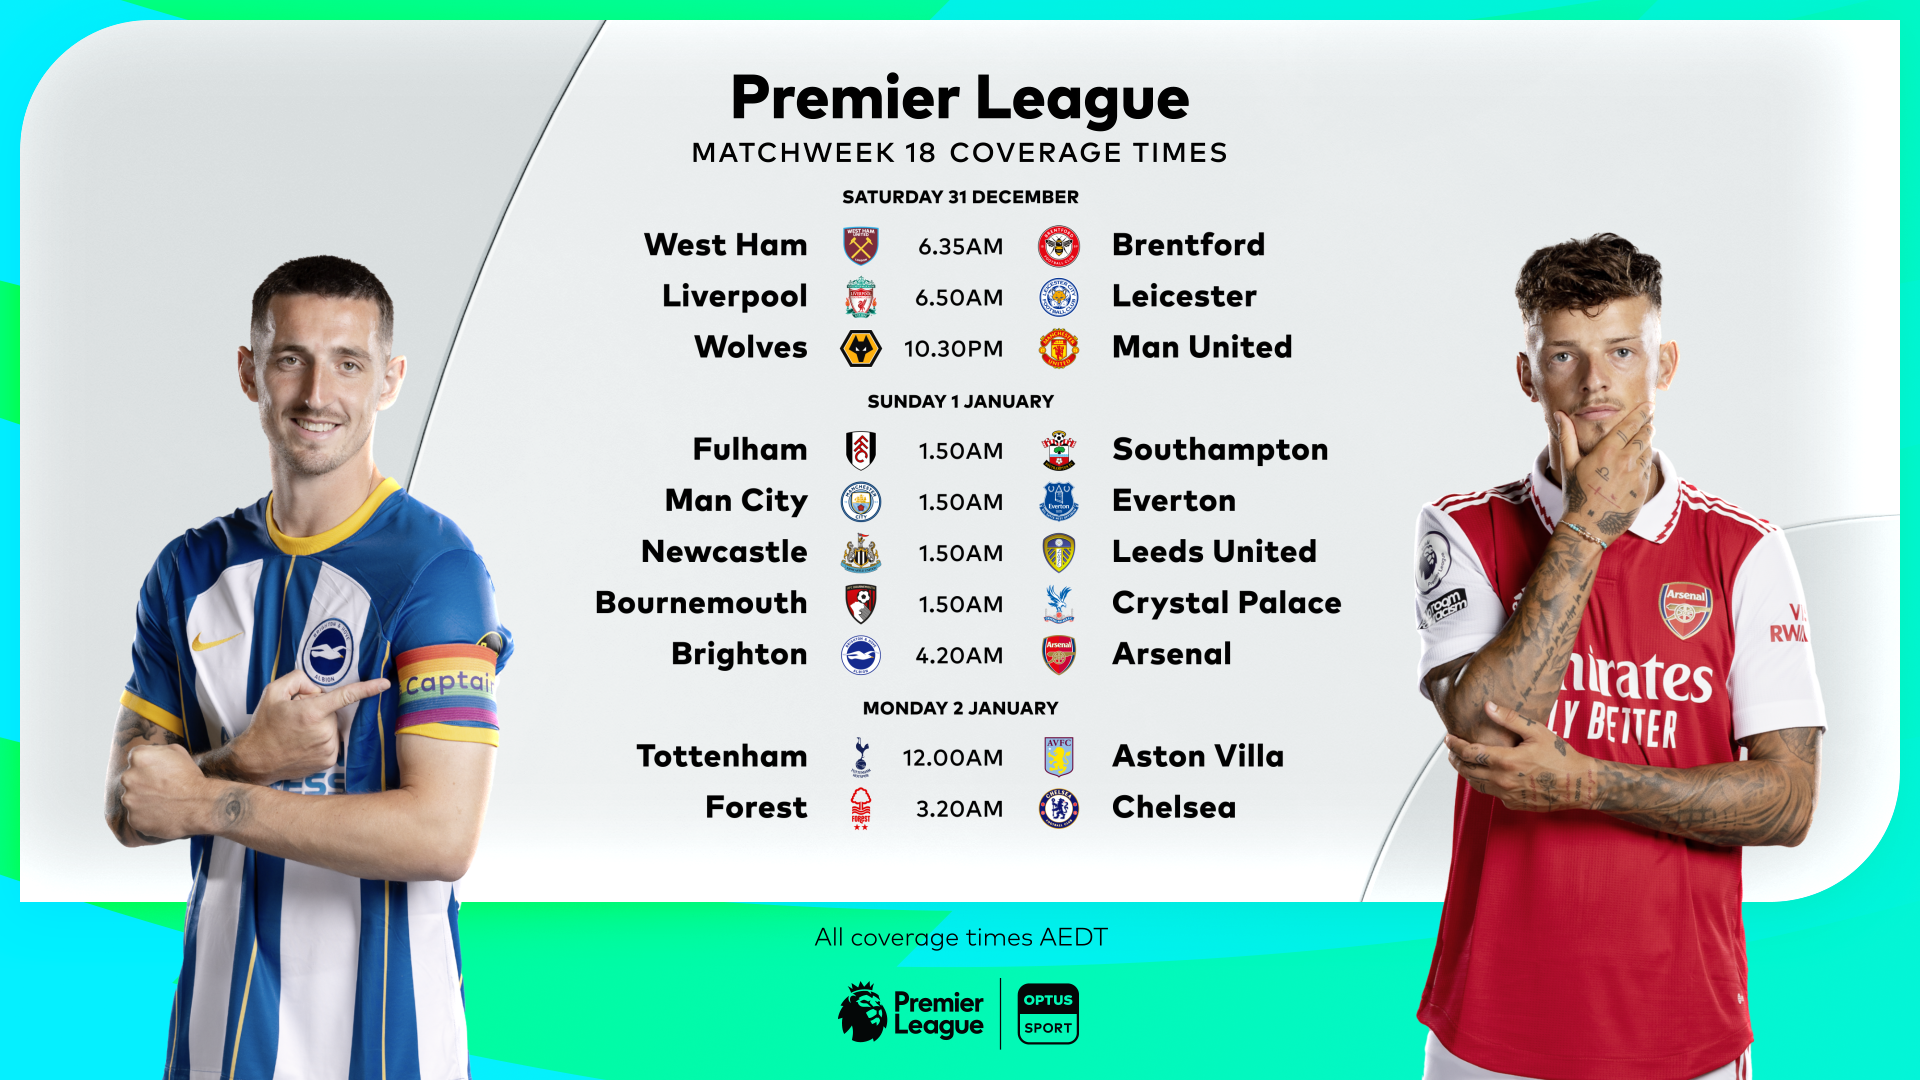 18/19 Premier League Preview, Matchweek 10